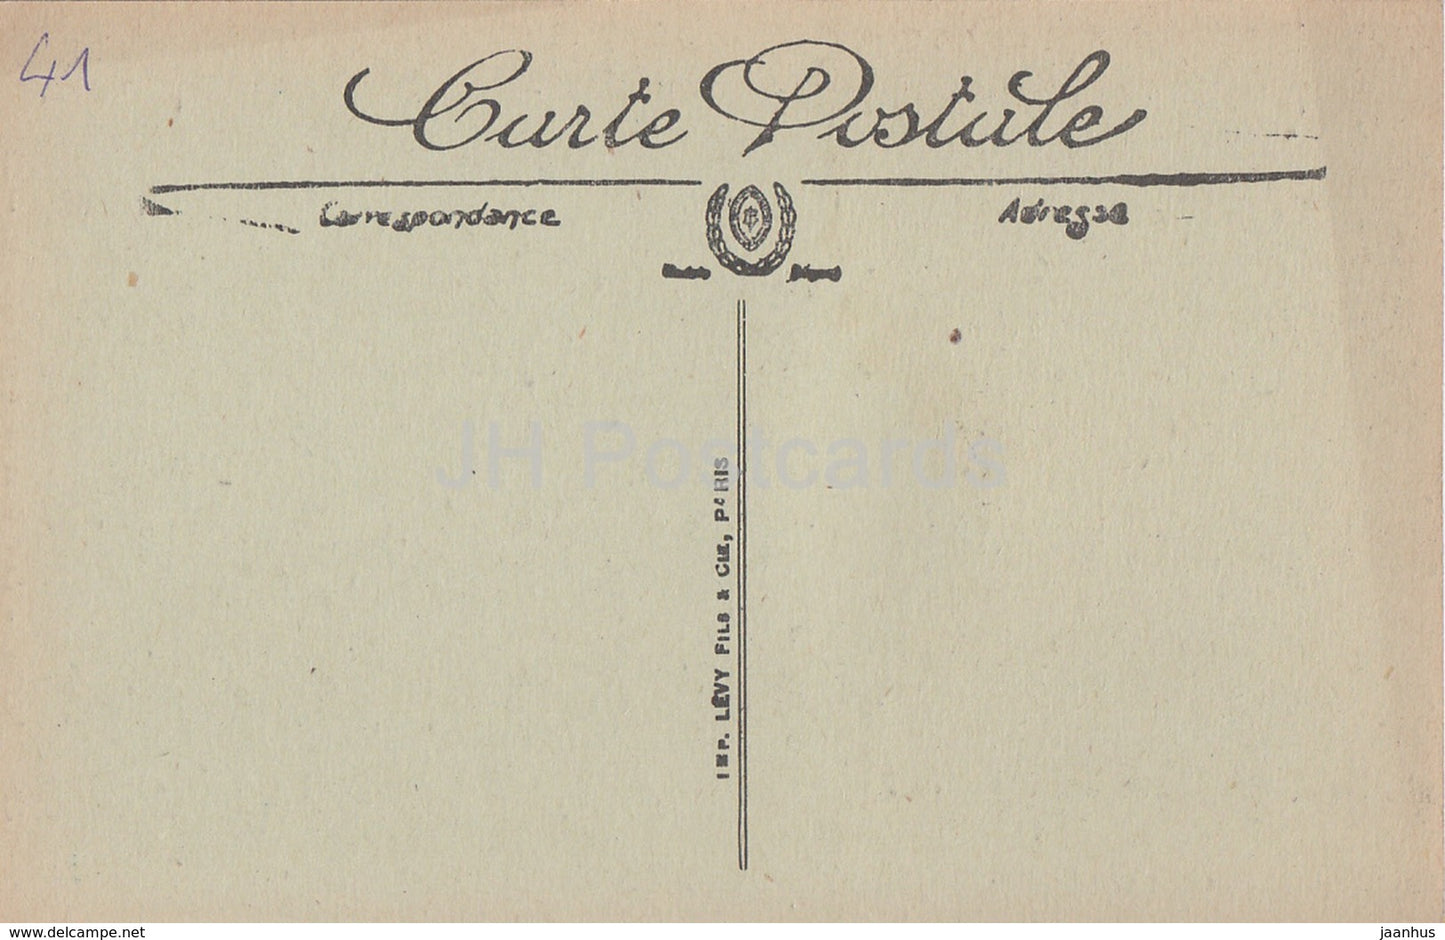 Blois - Le Chateau - Cul de Lampe - château - 326 - carte postale ancienne - France - inutilisée